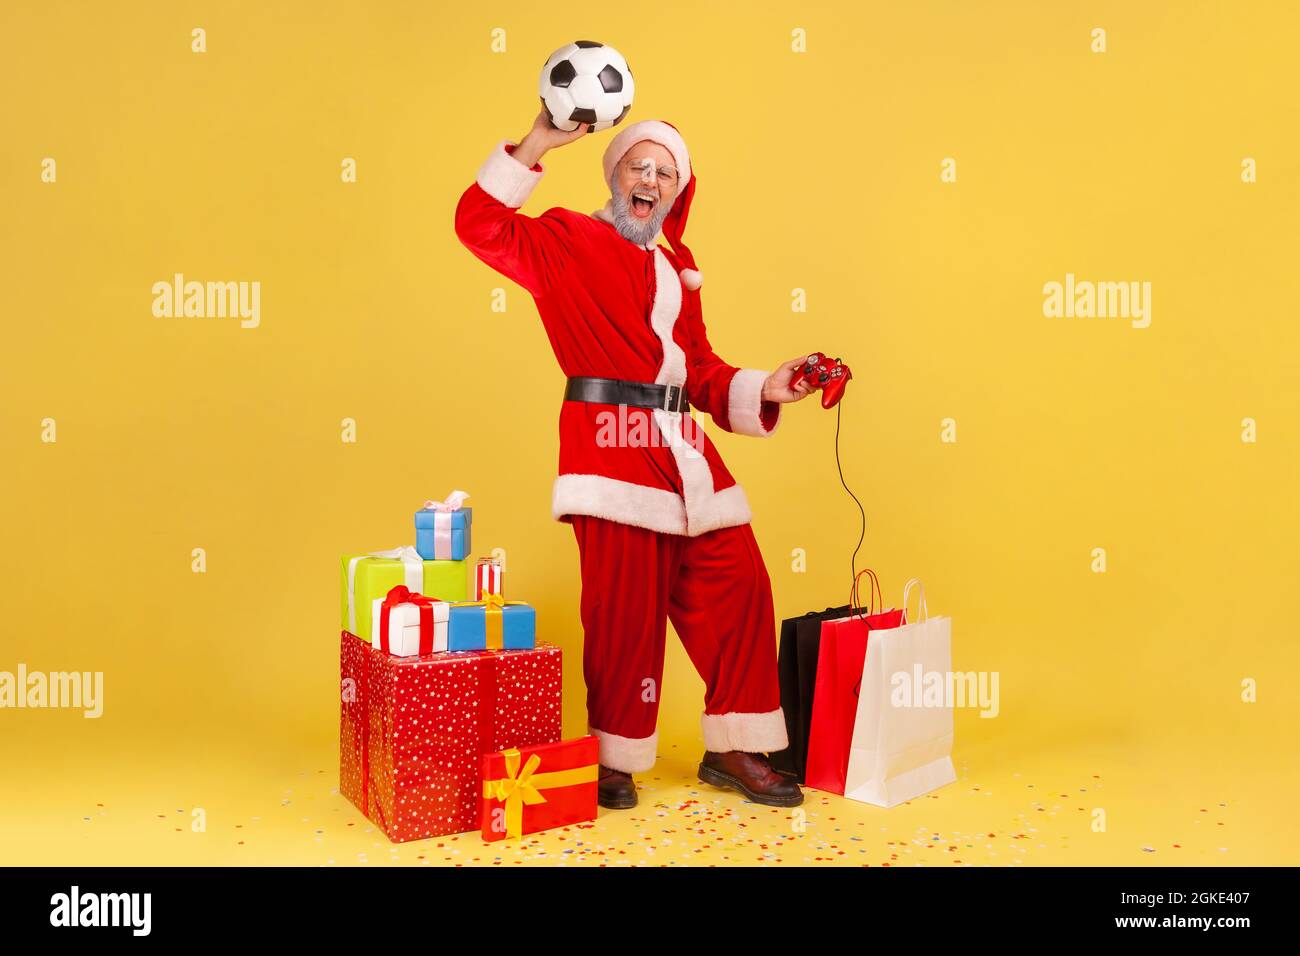 Largo de hombre con barba gris en santa claus traje de brazo elevado con balón de fútbol, con joystick, celebrar ganar en el videojuego de fútbol. YO Foto de stock